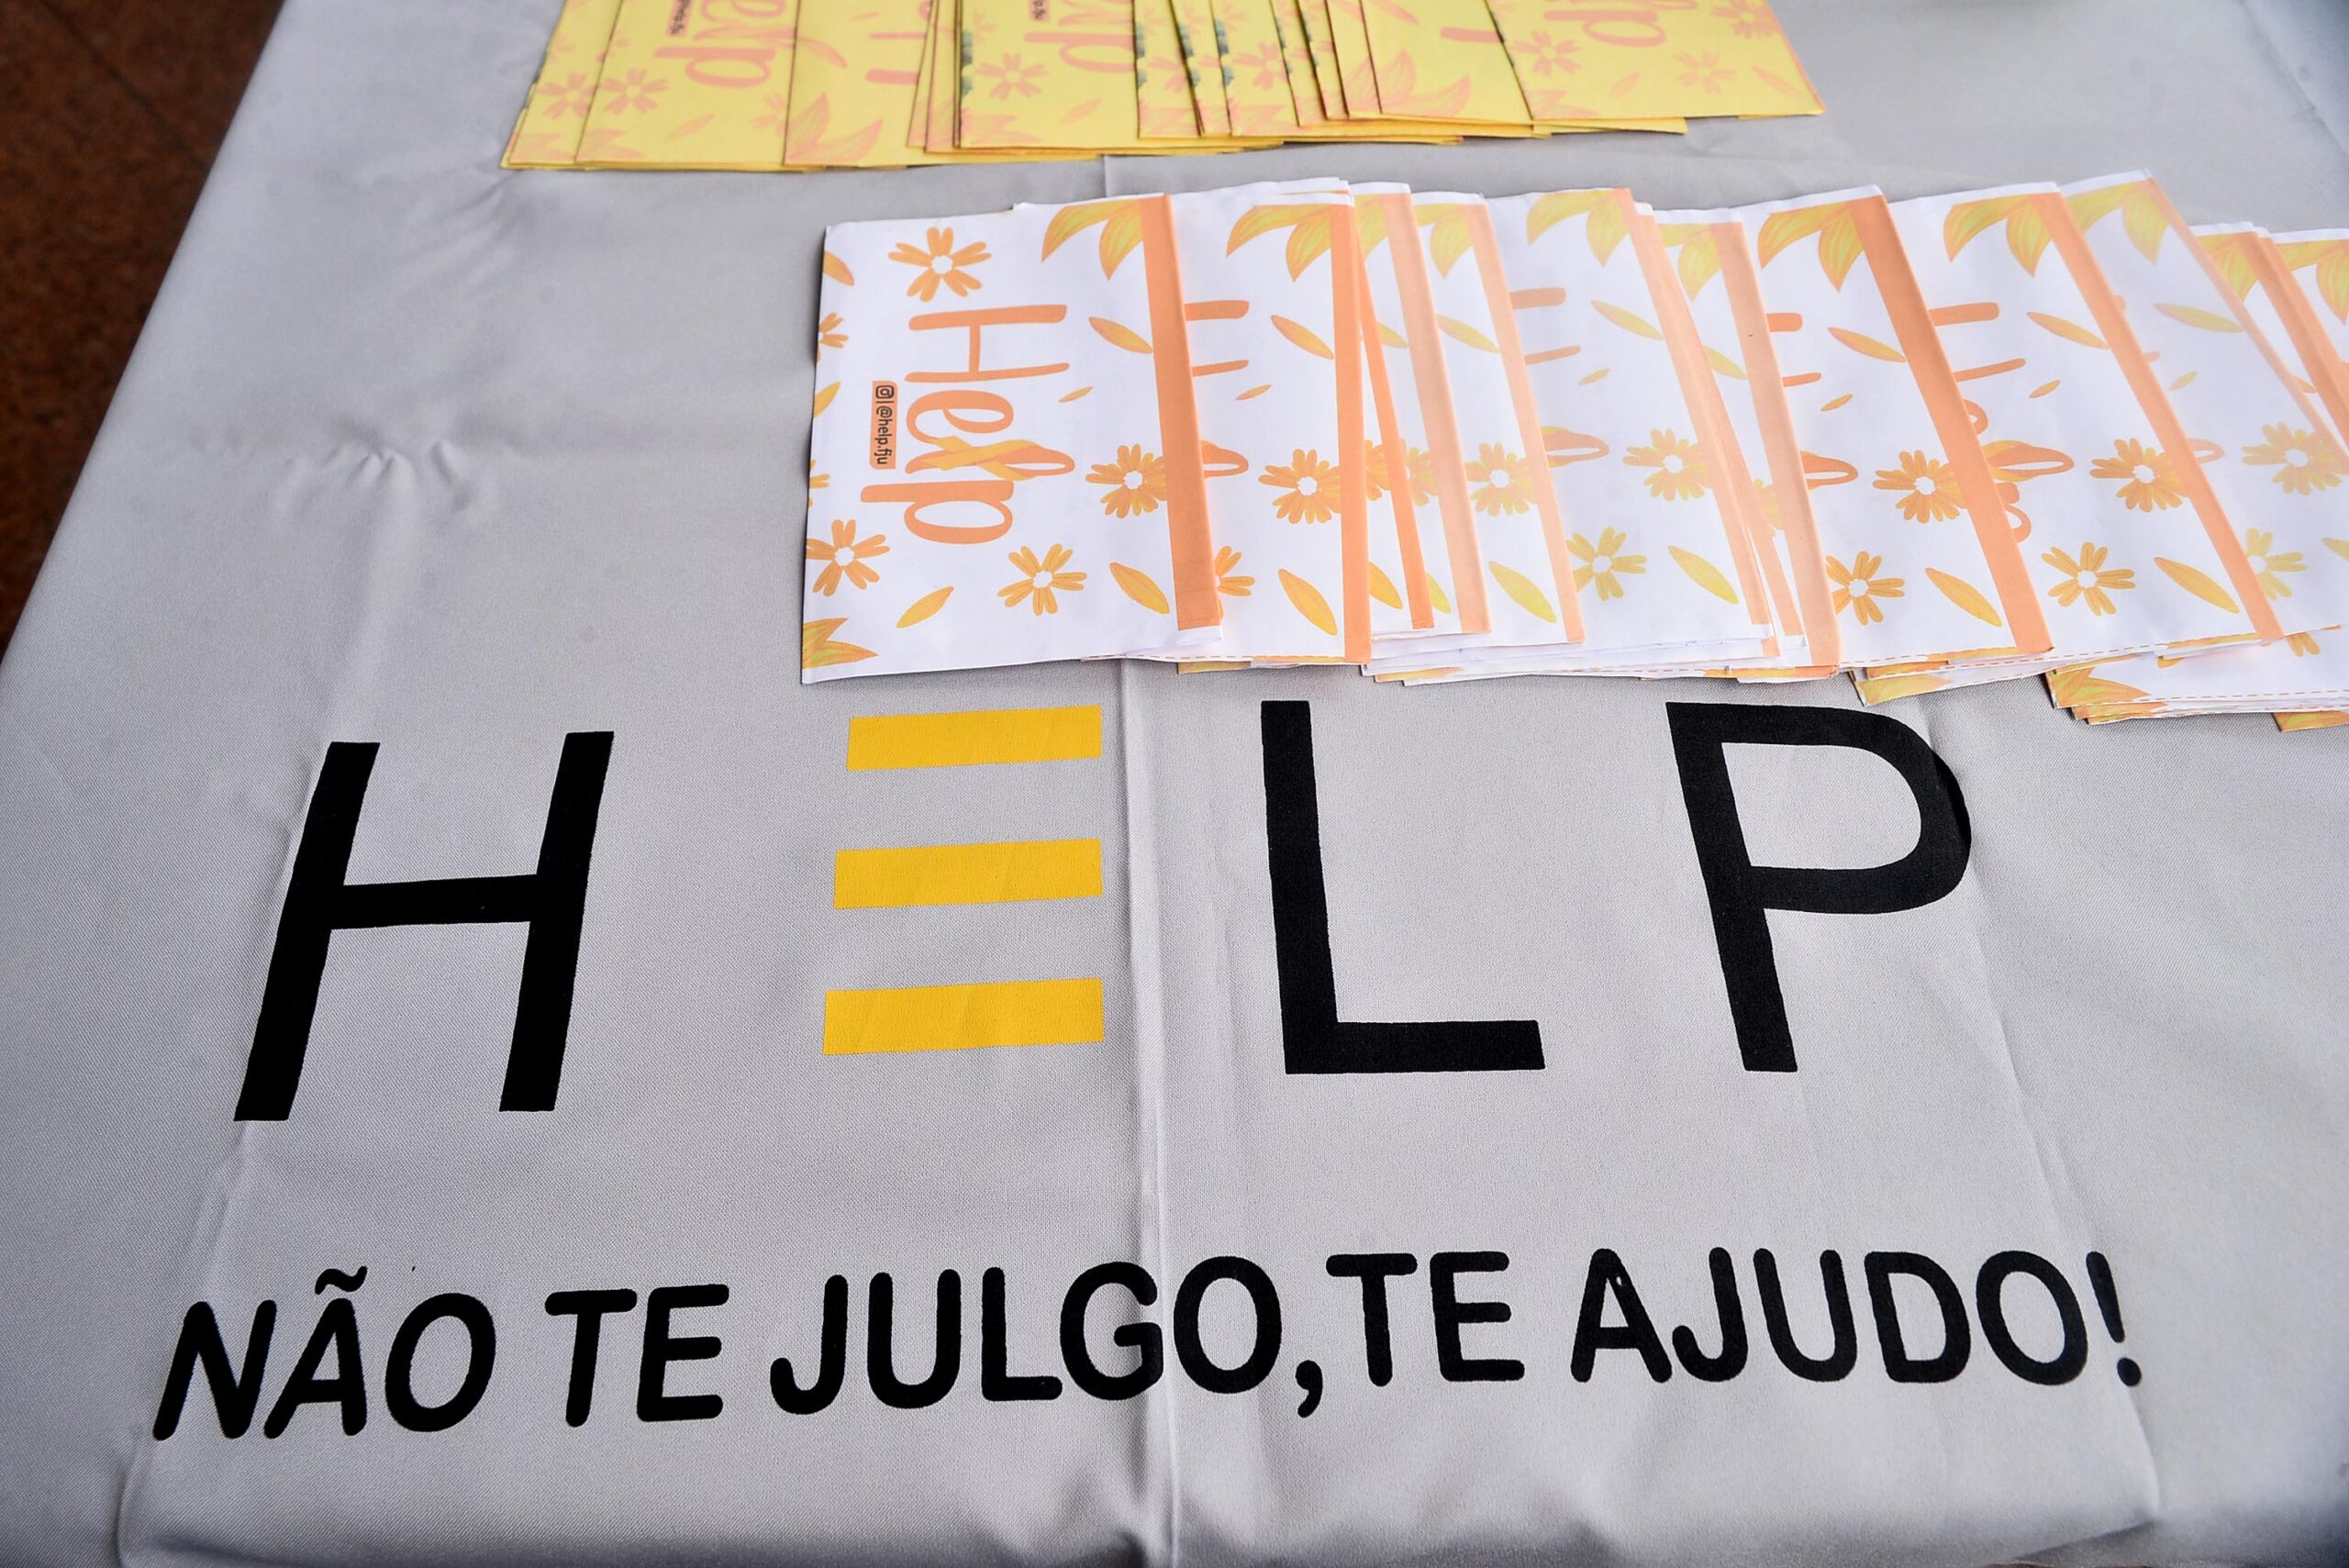 Parceria leva campanha Setembro Amarelo aos ascensores de Salvador